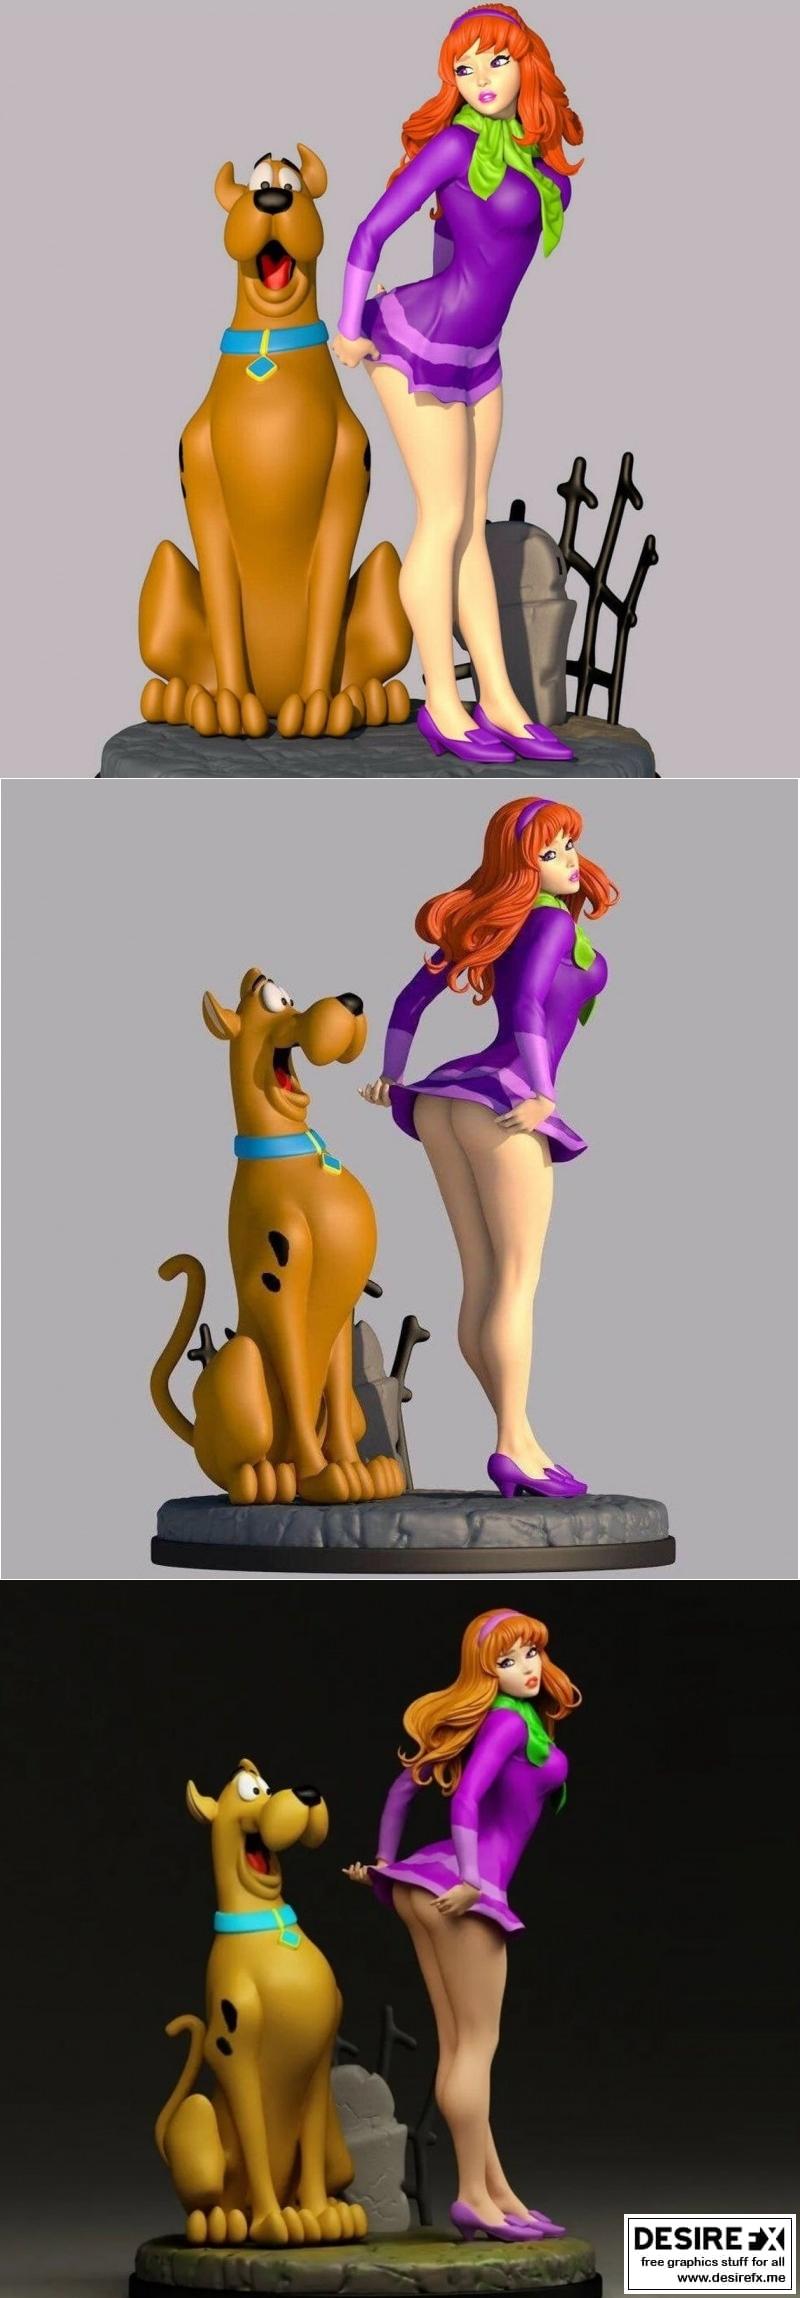 anindita samanta recommends Sexy Scooby Doo